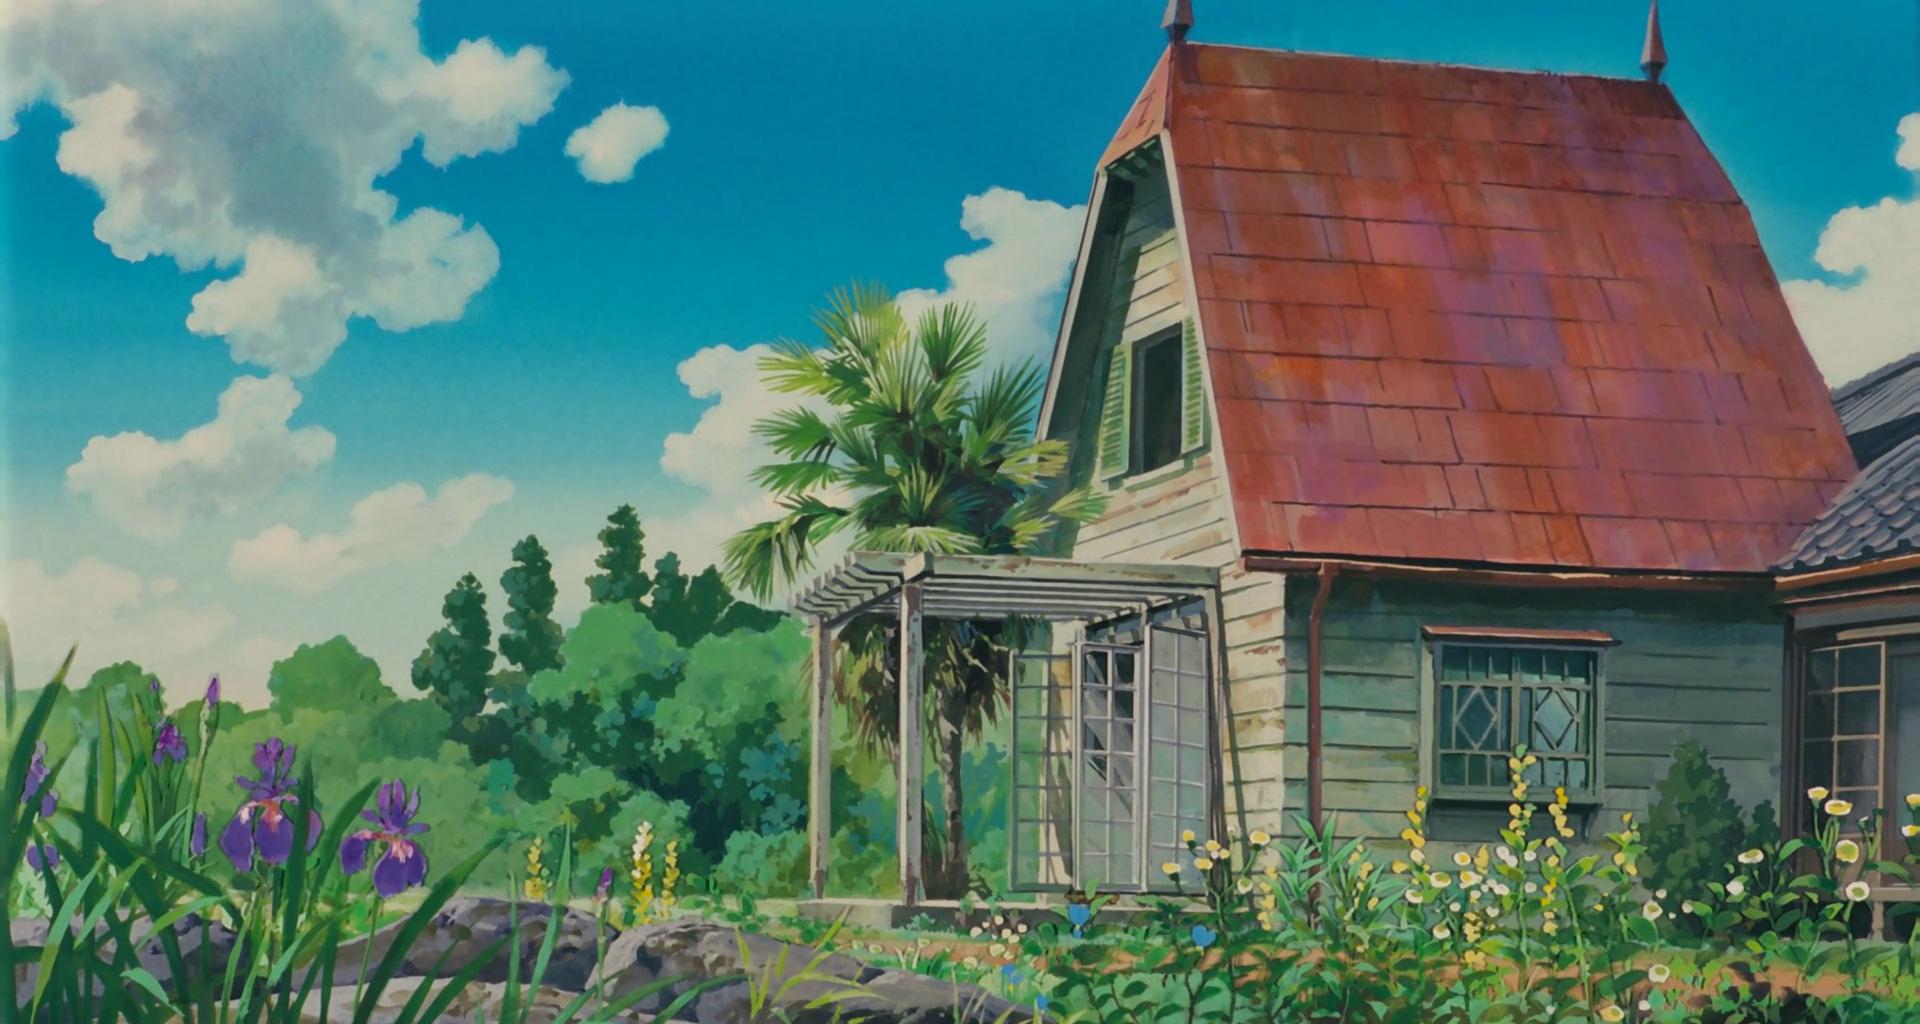 Studio Ghibli Wallpaper 1920x1024 ID46398